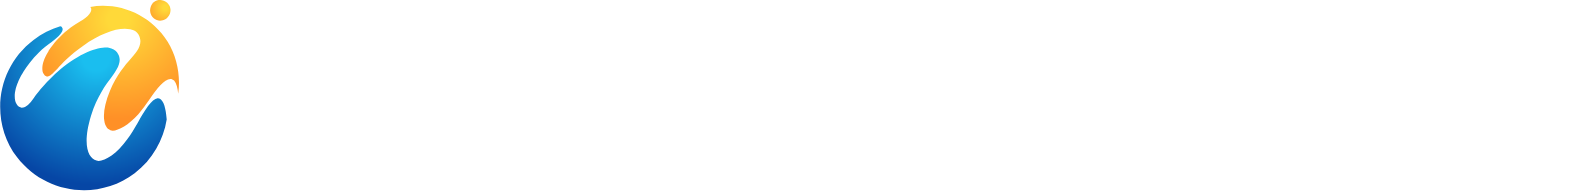 World Holdings logo grand pour les fonds sombres (PNG transparent)